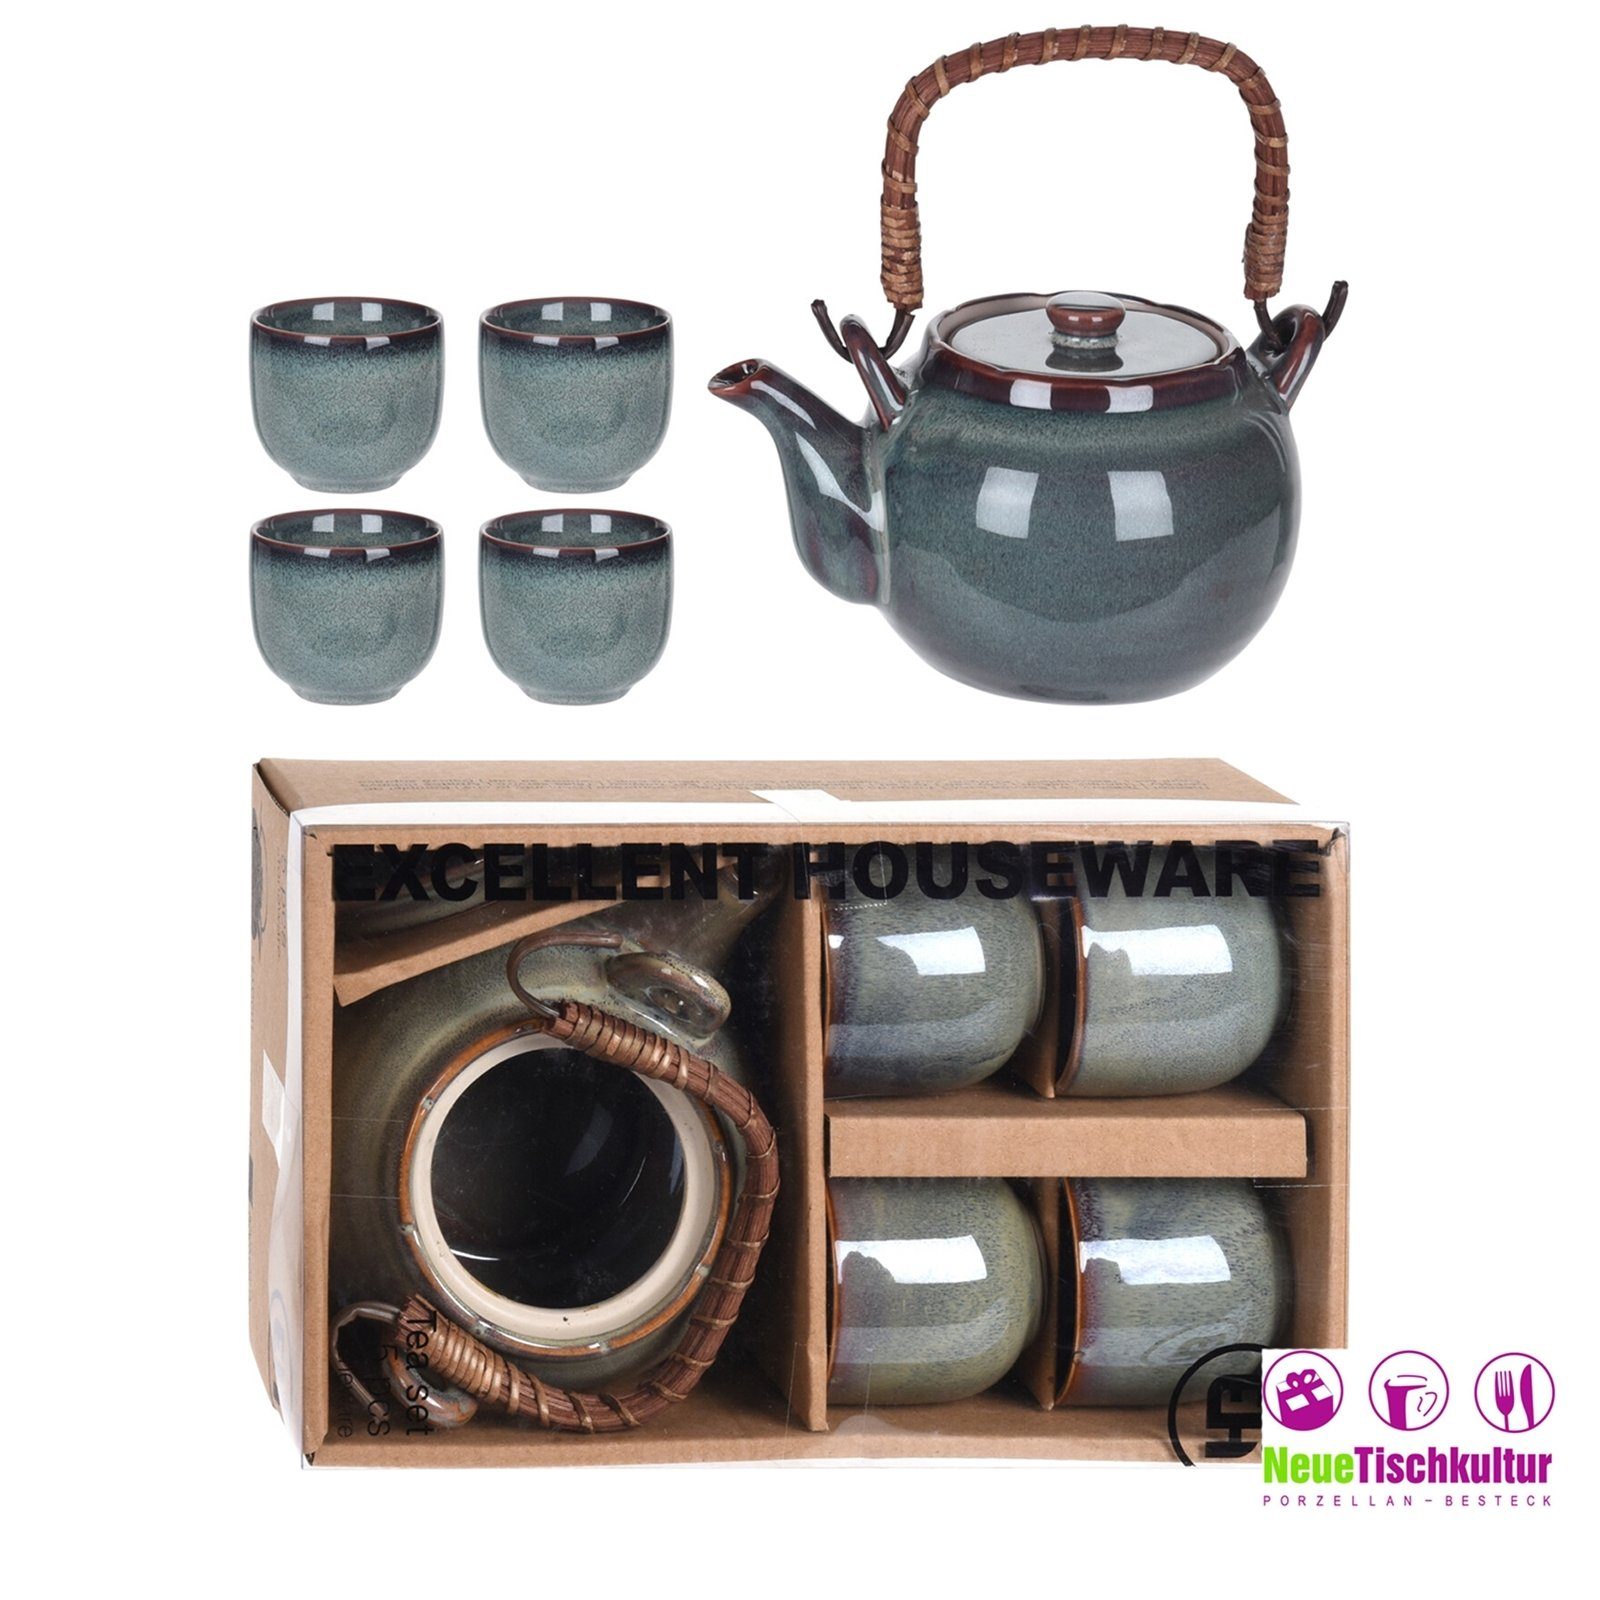 Neuetischkultur Teekanne Teekanne mit 4 Becher Keramik